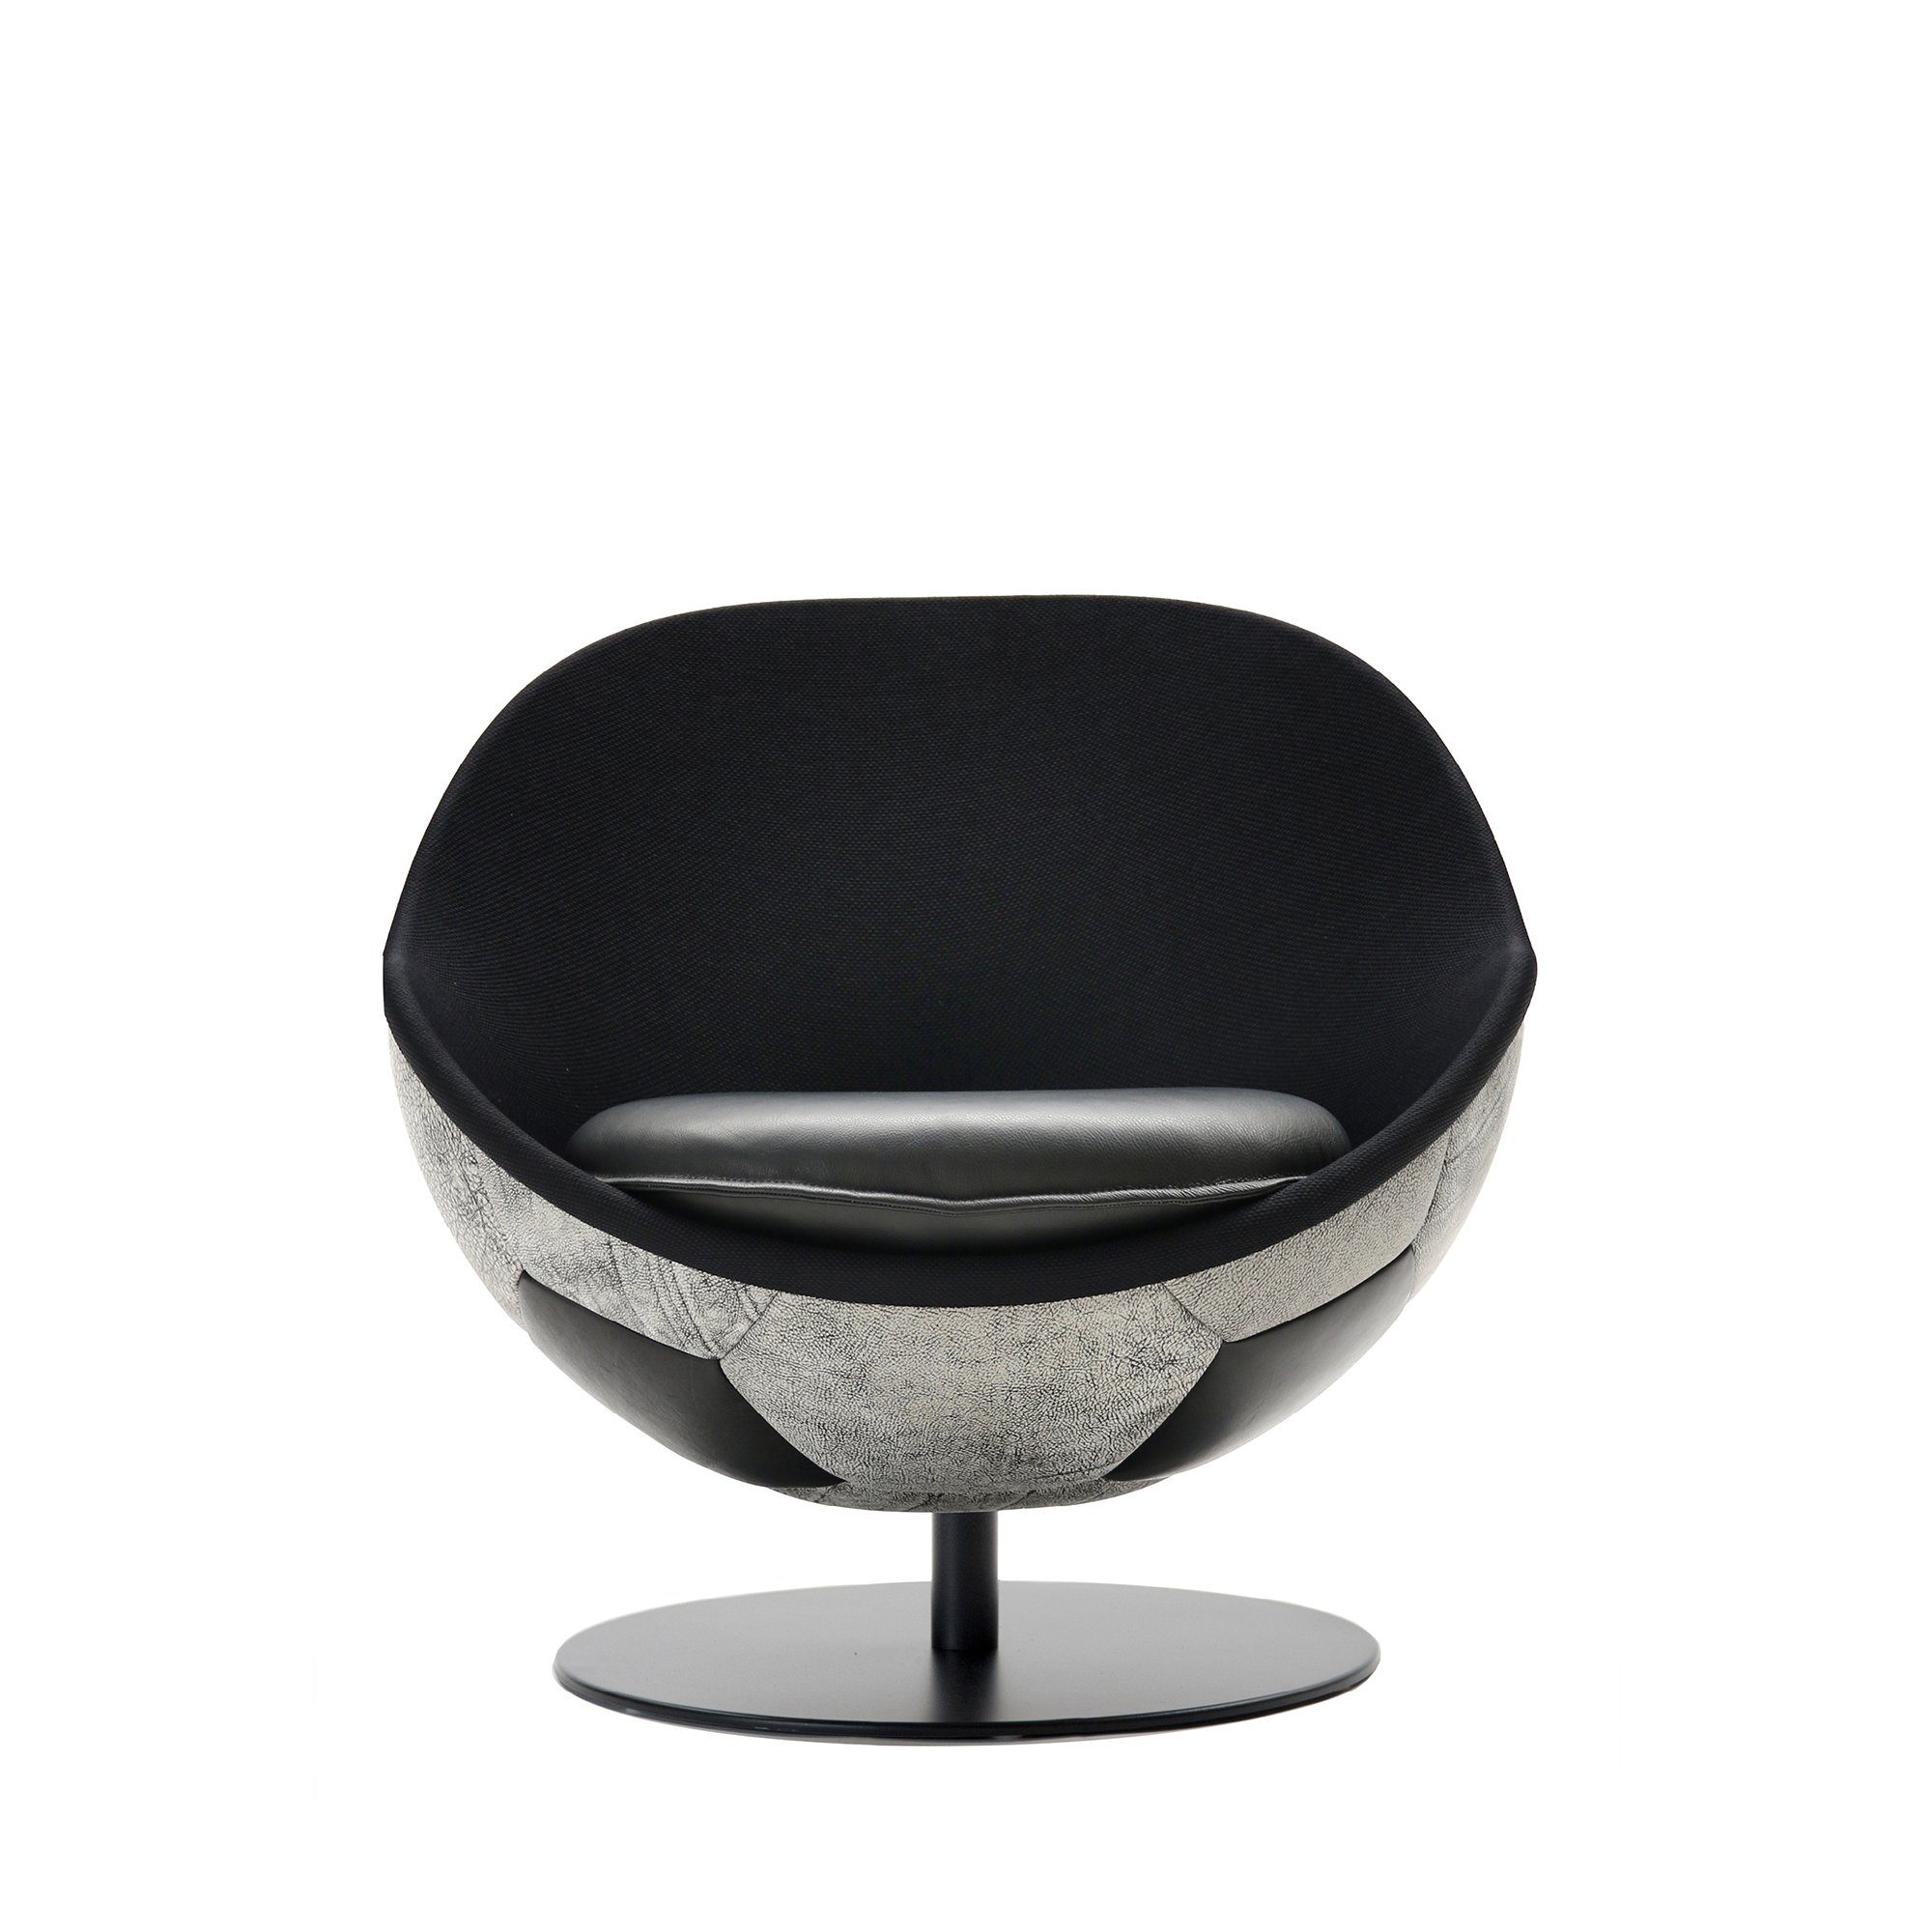 lillus Loungesessel HANDARBEIT, | GERMANY, LIEBEVOLLE MADE schwarz-weiß IN Sessel, Textilleder-schwarz EINZIGARTIG HATTRICK Vintage INDIVIDUALISIERBAR, Fussball